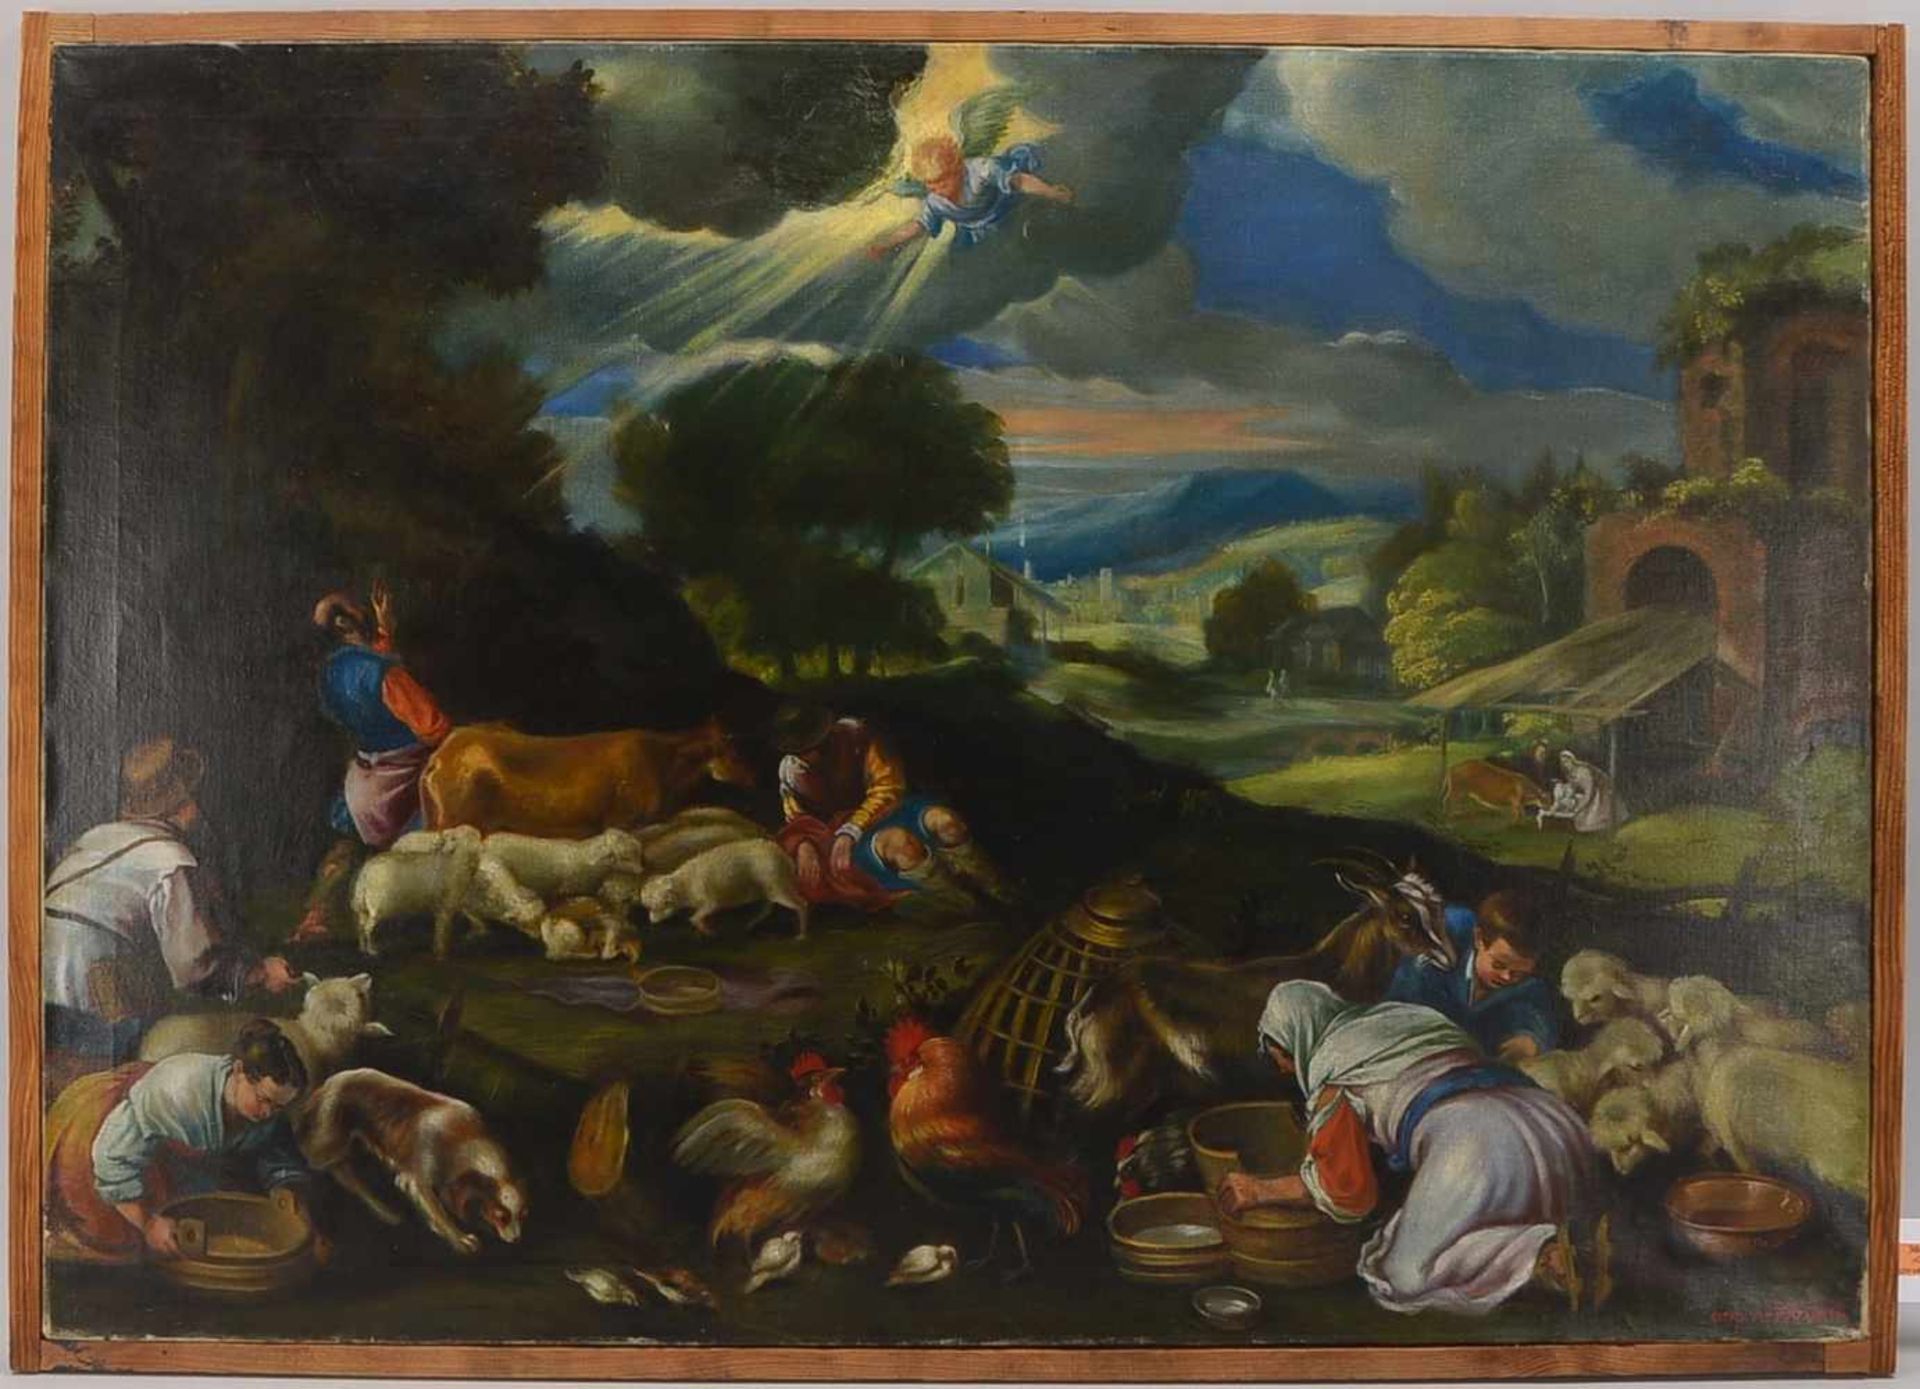 Gemälde, 'Biblische Szene' (cop. - gemalt von Otto Herrfurth), Öl/Lw; Bildmaße 82 x 116 cm,